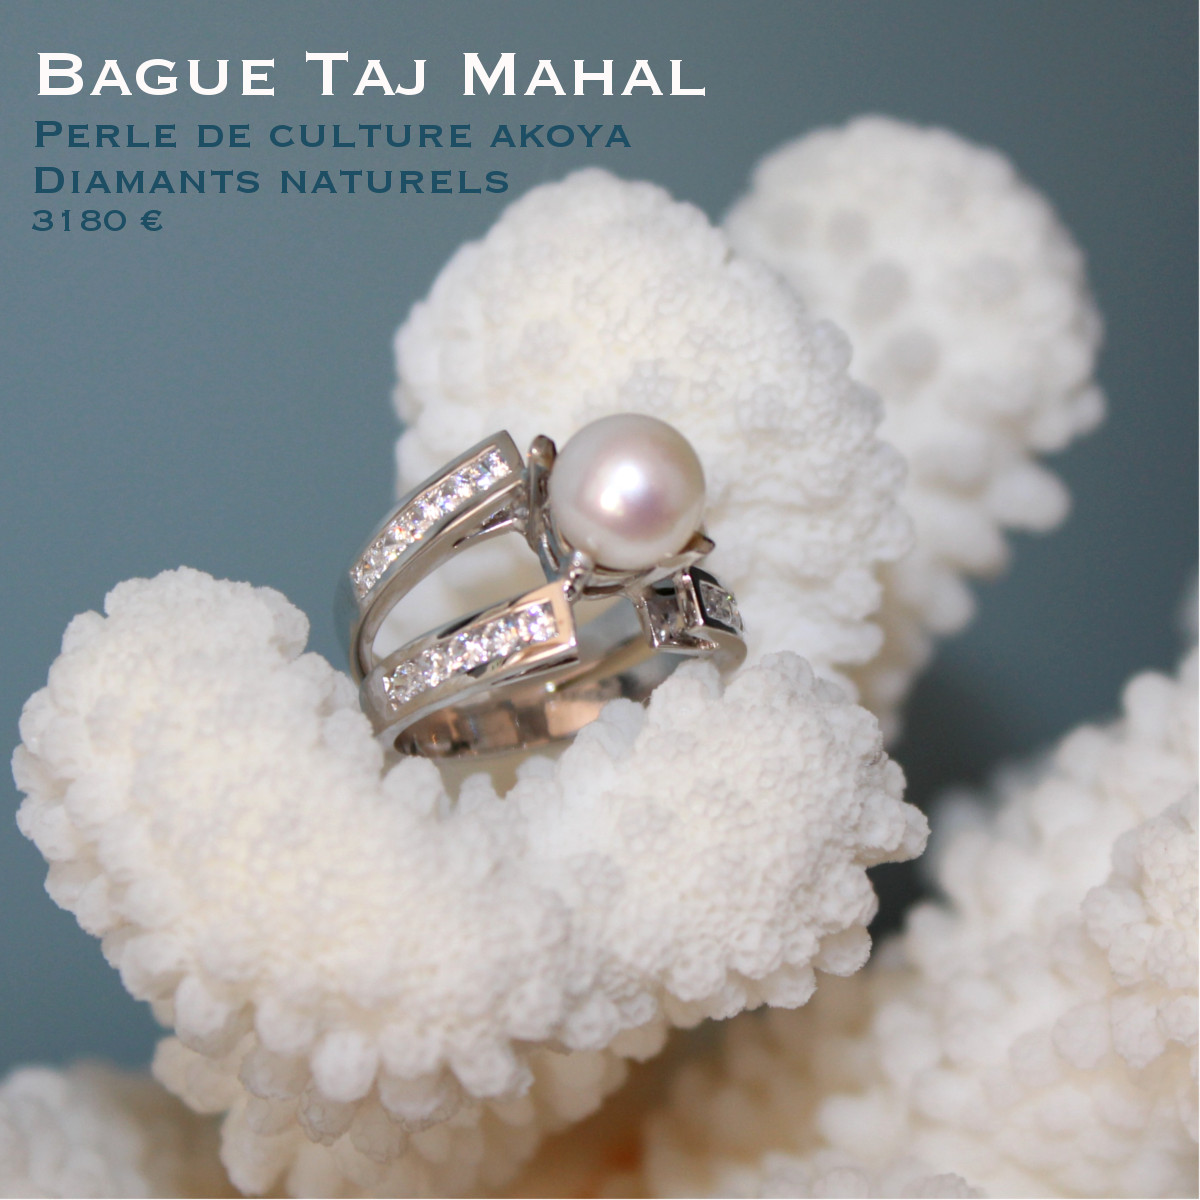 Bague Taj Mahal - Image 4 